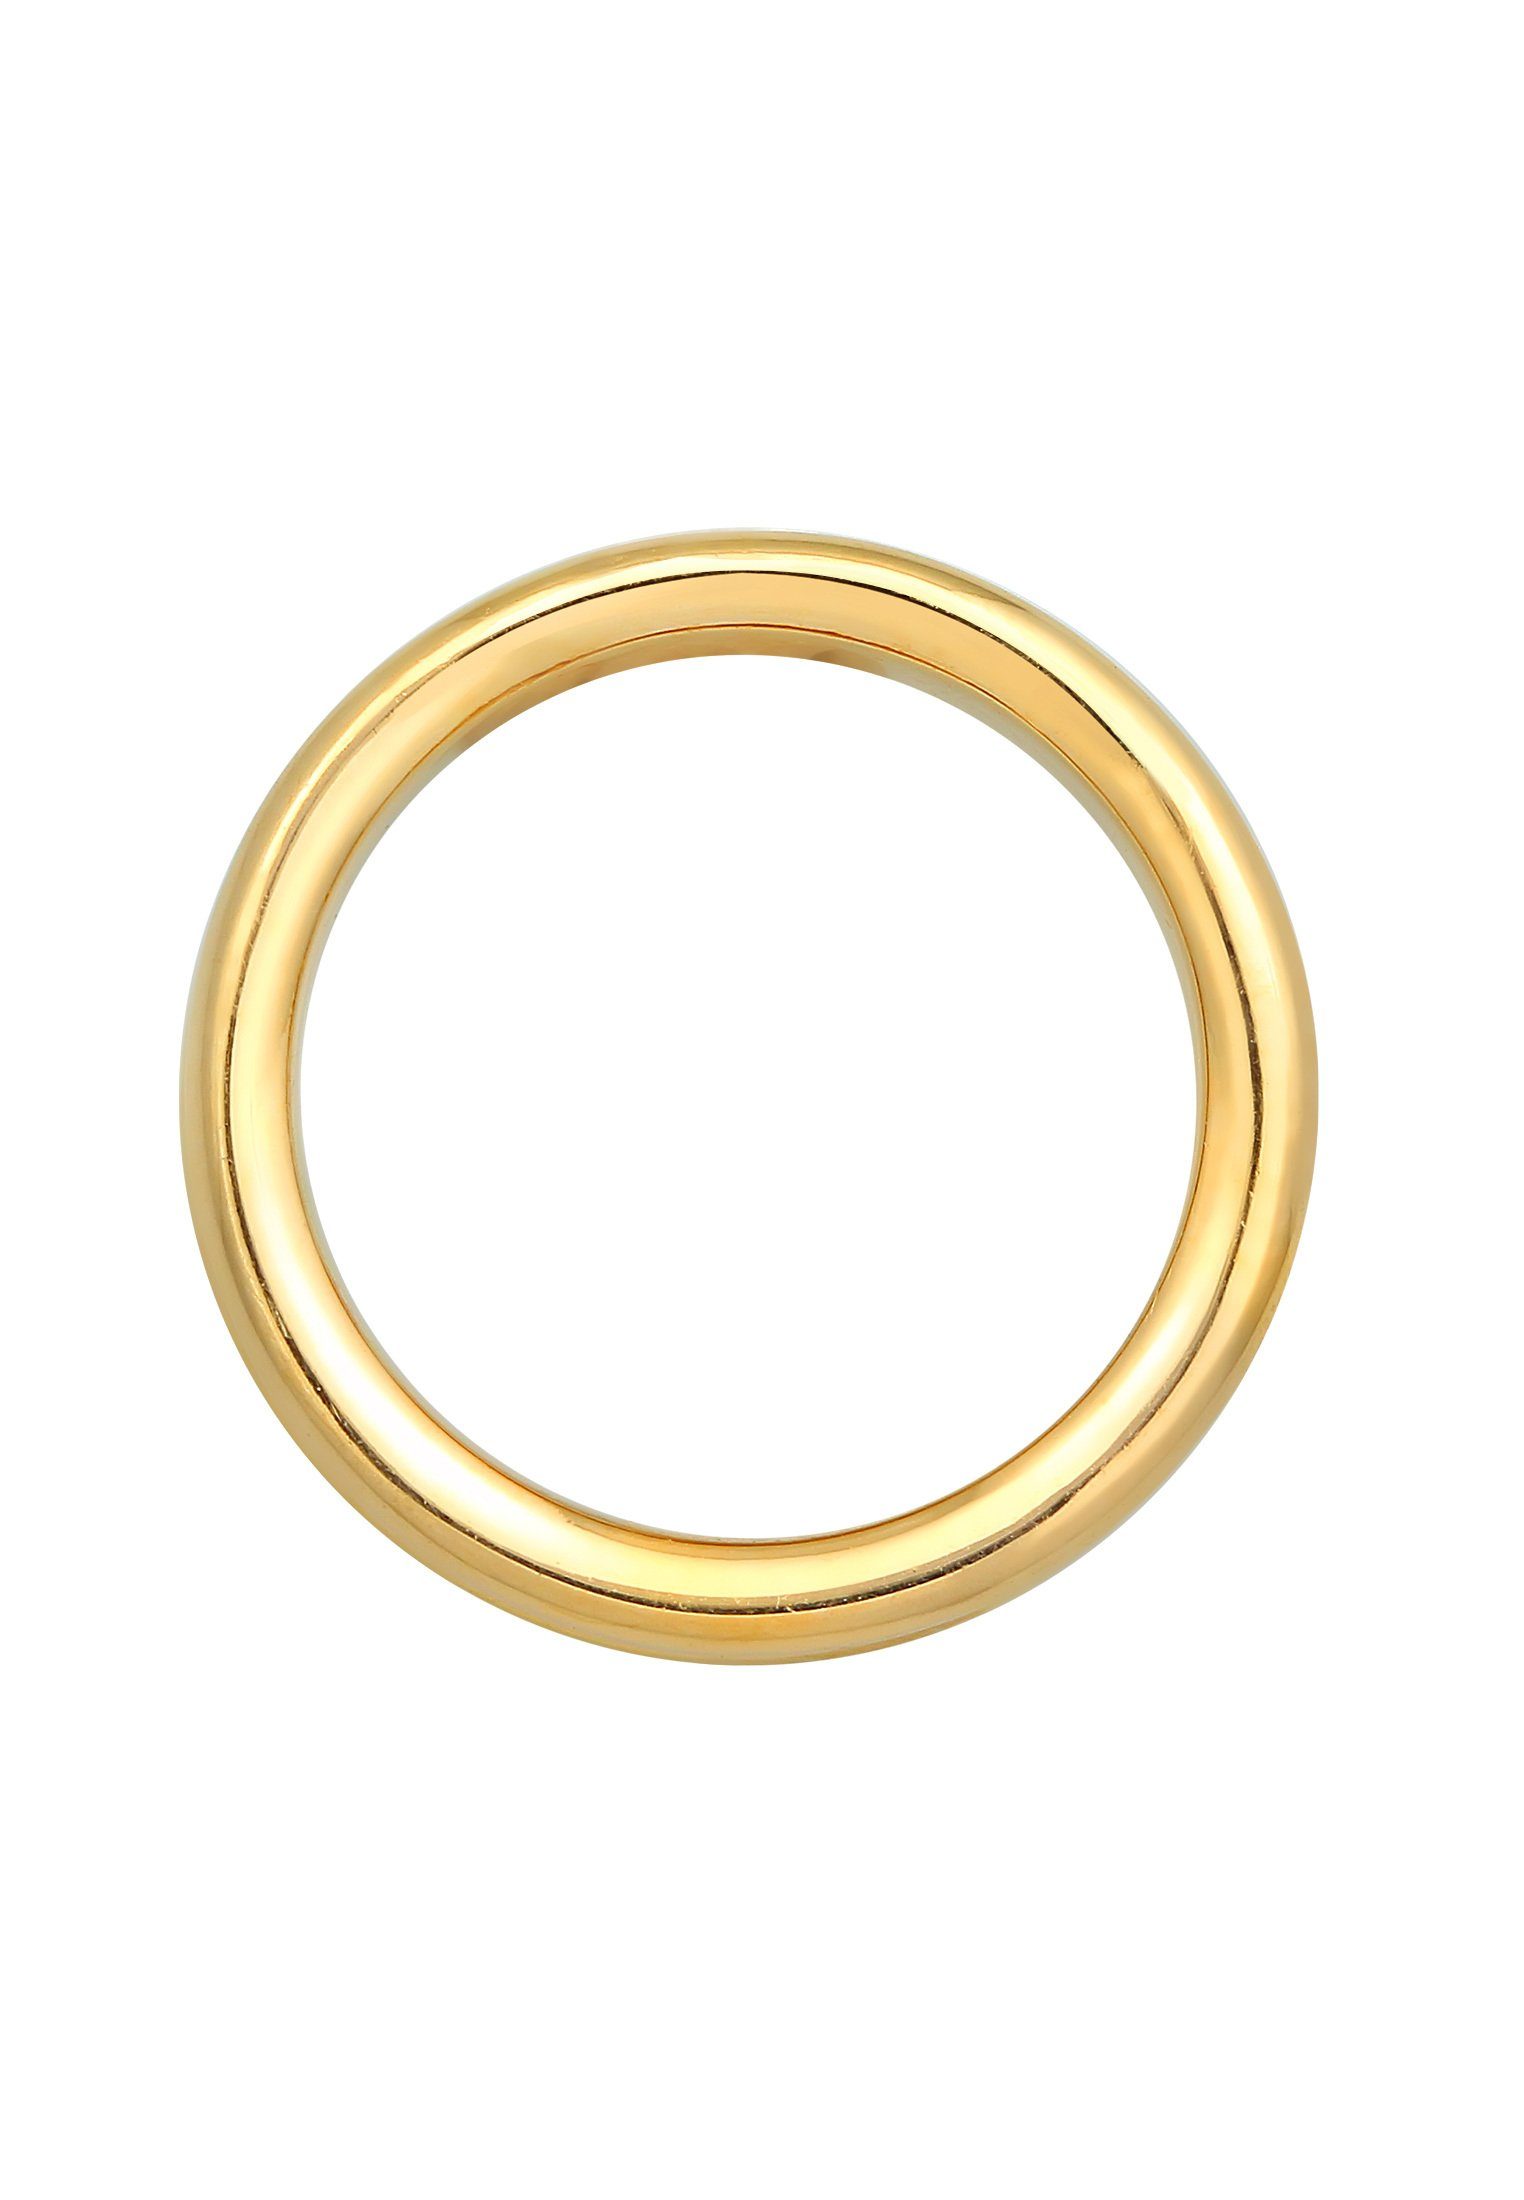 Fingerring Gold Elegant 925 Premium Silber Bandring Elli Kristall